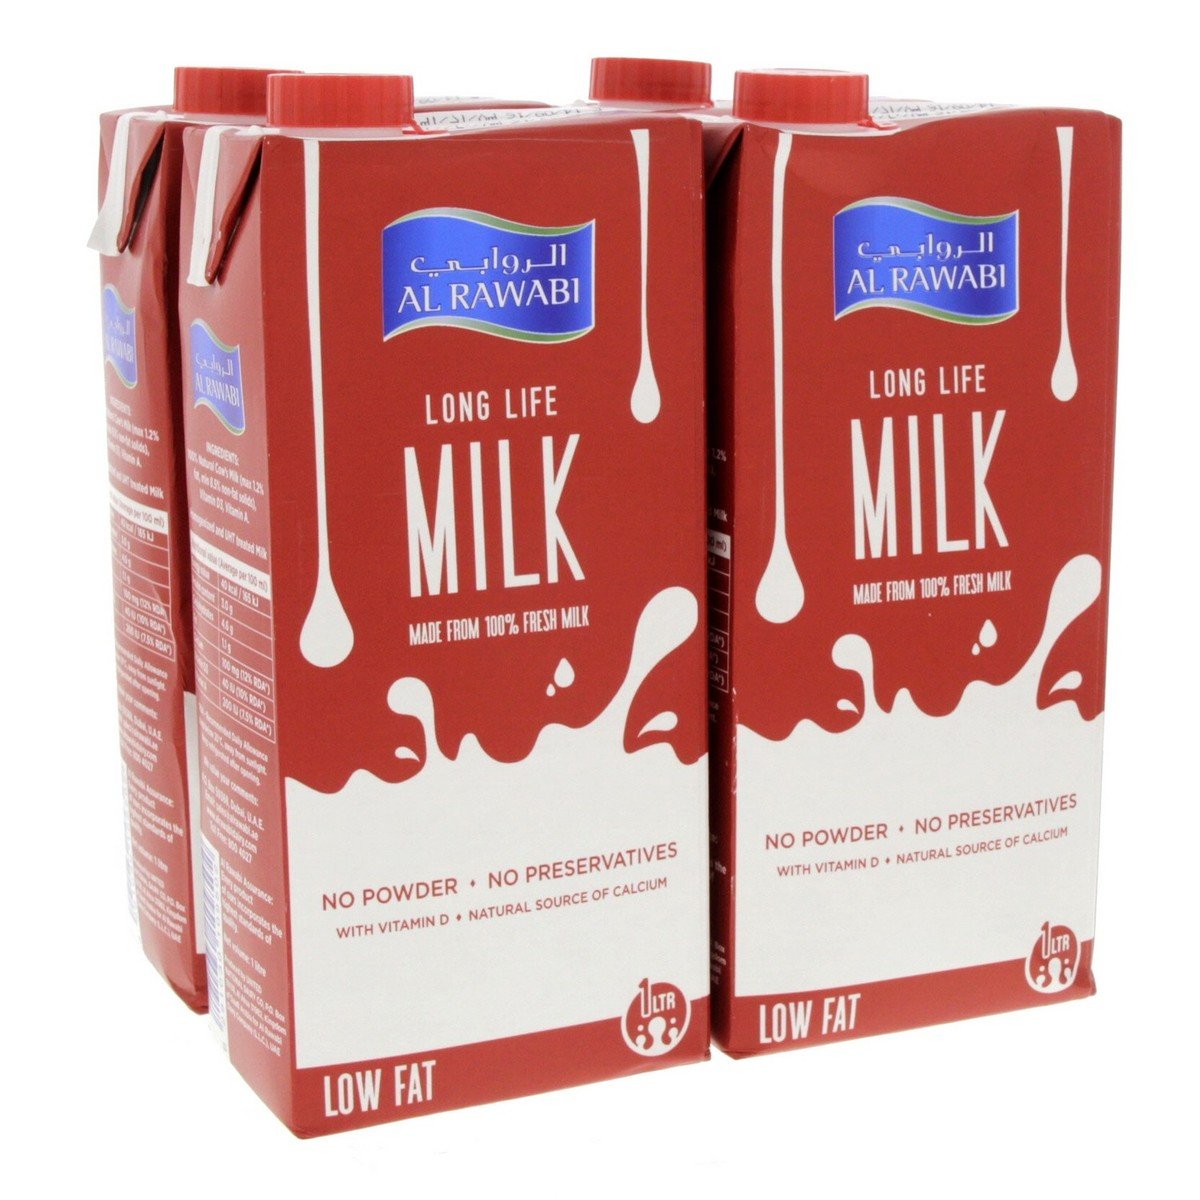 Al Rawabi Long Life Milk Low Fat 4 x 1 Litre